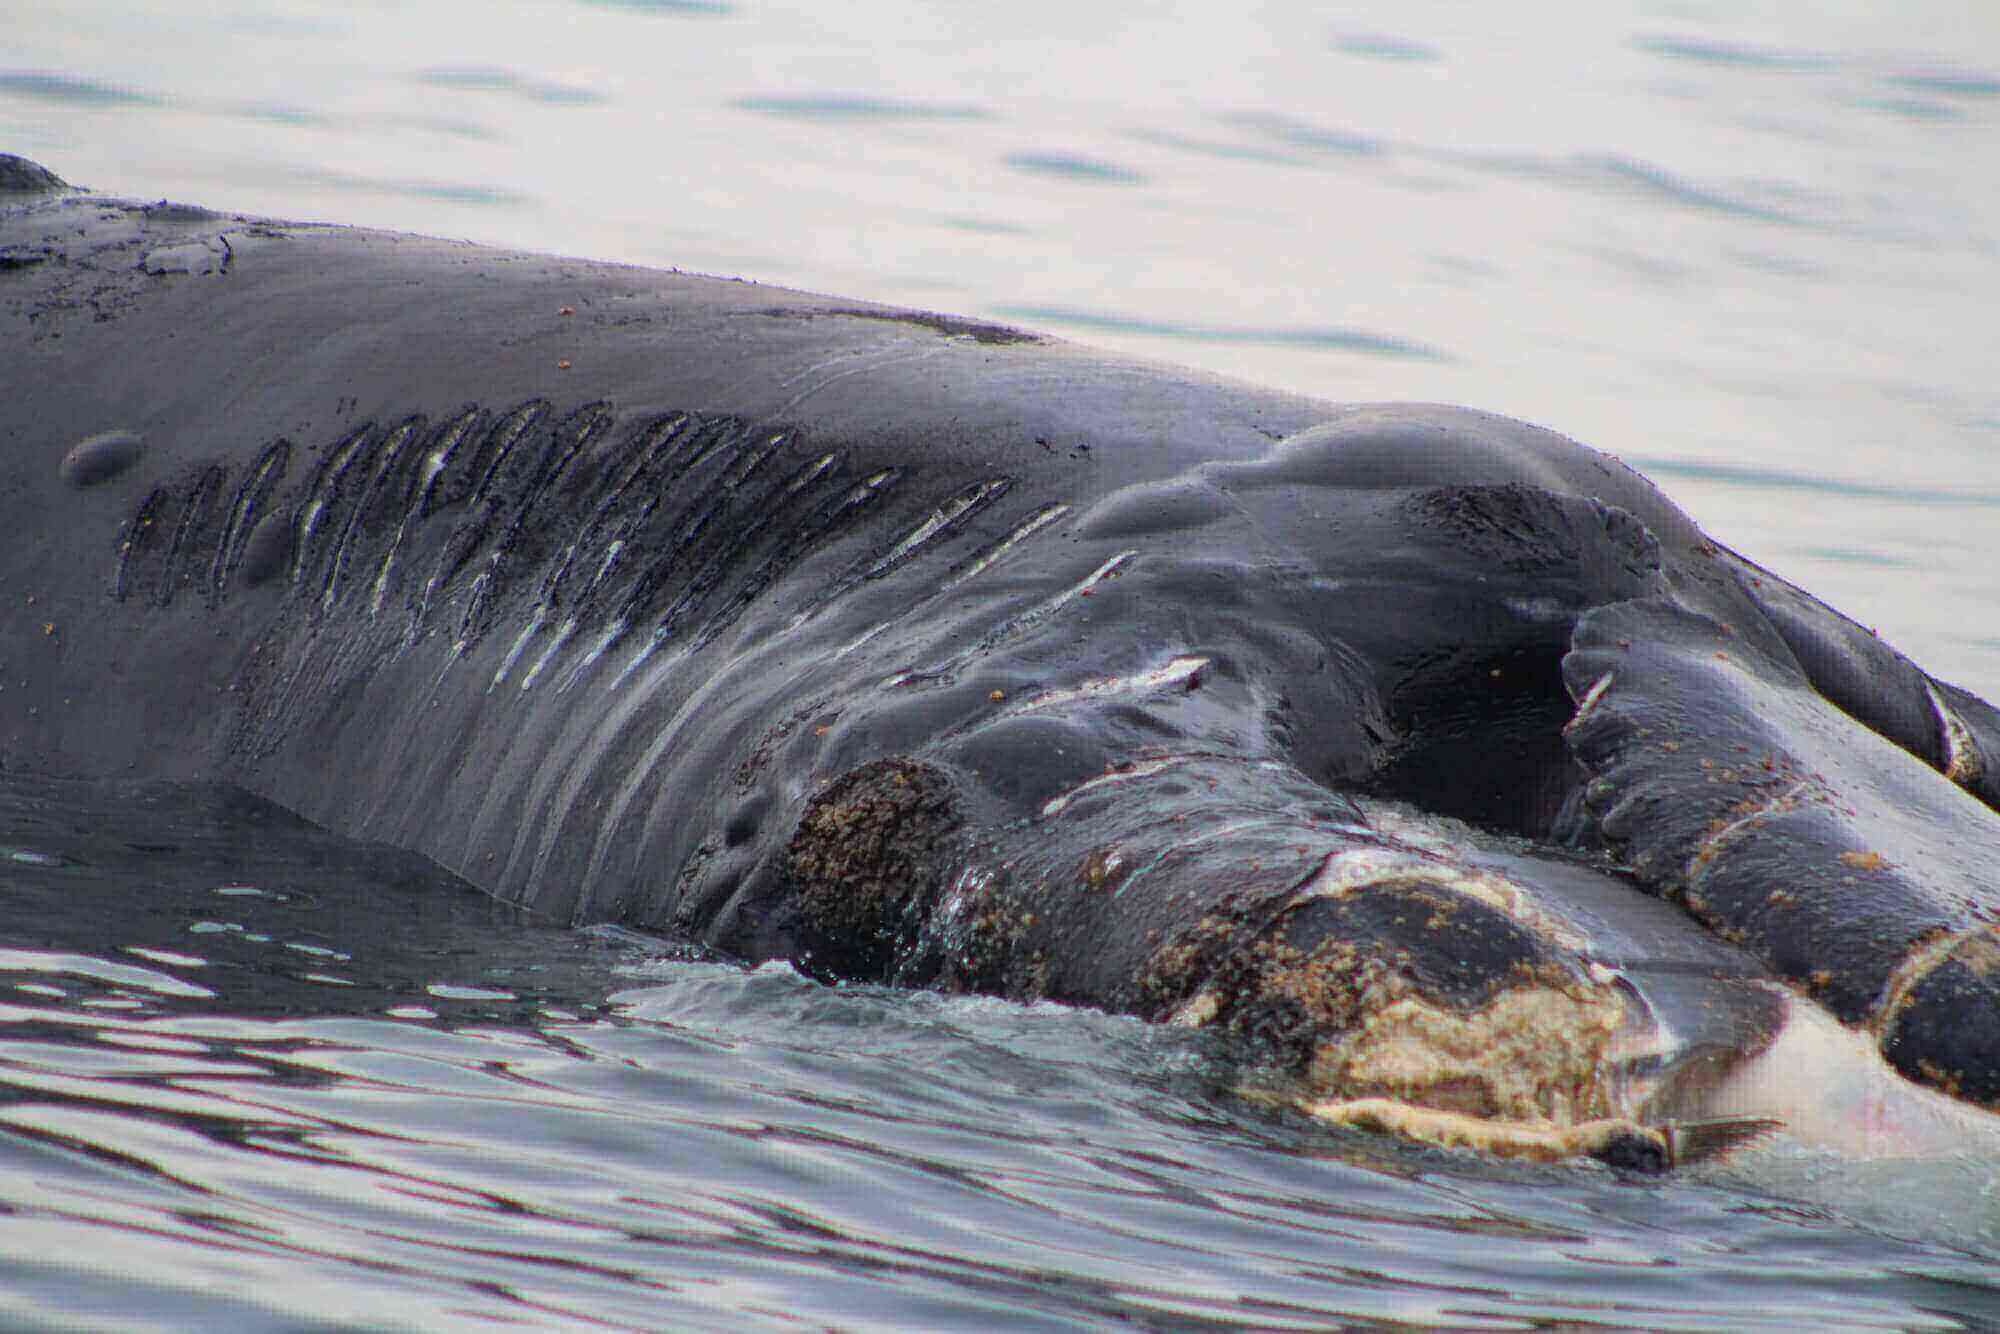 mutilations sur le corps de la baleine noire